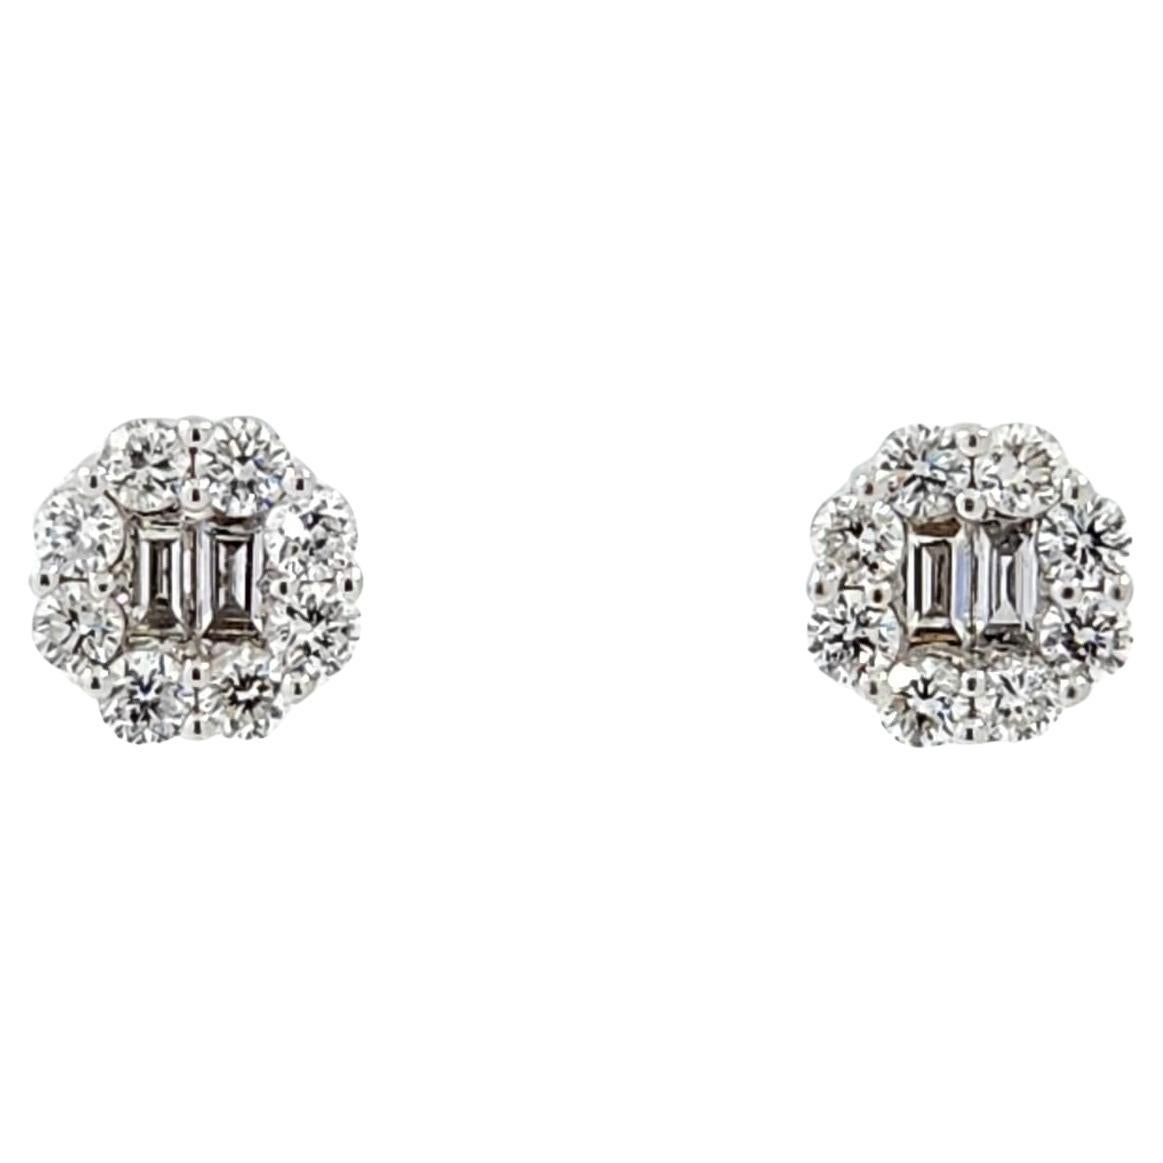 Baguette Diamond Stud Earrings in 18K White Gold